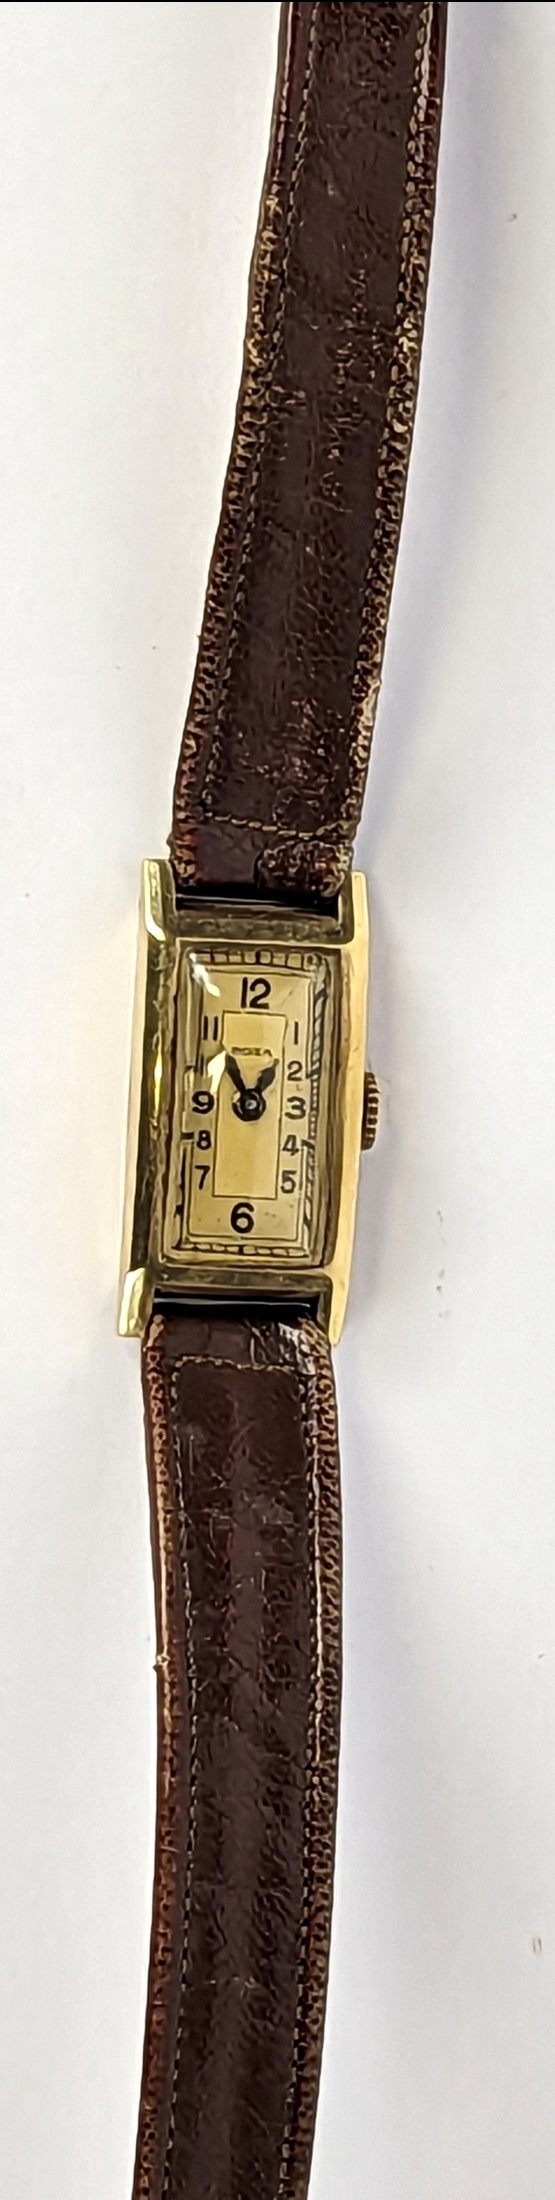 značeno Doxa - Dámské hodinky, zlato 585/1000, značeno platnou puncovní značkou "lyra", hrubá hmotnost 12,69 g